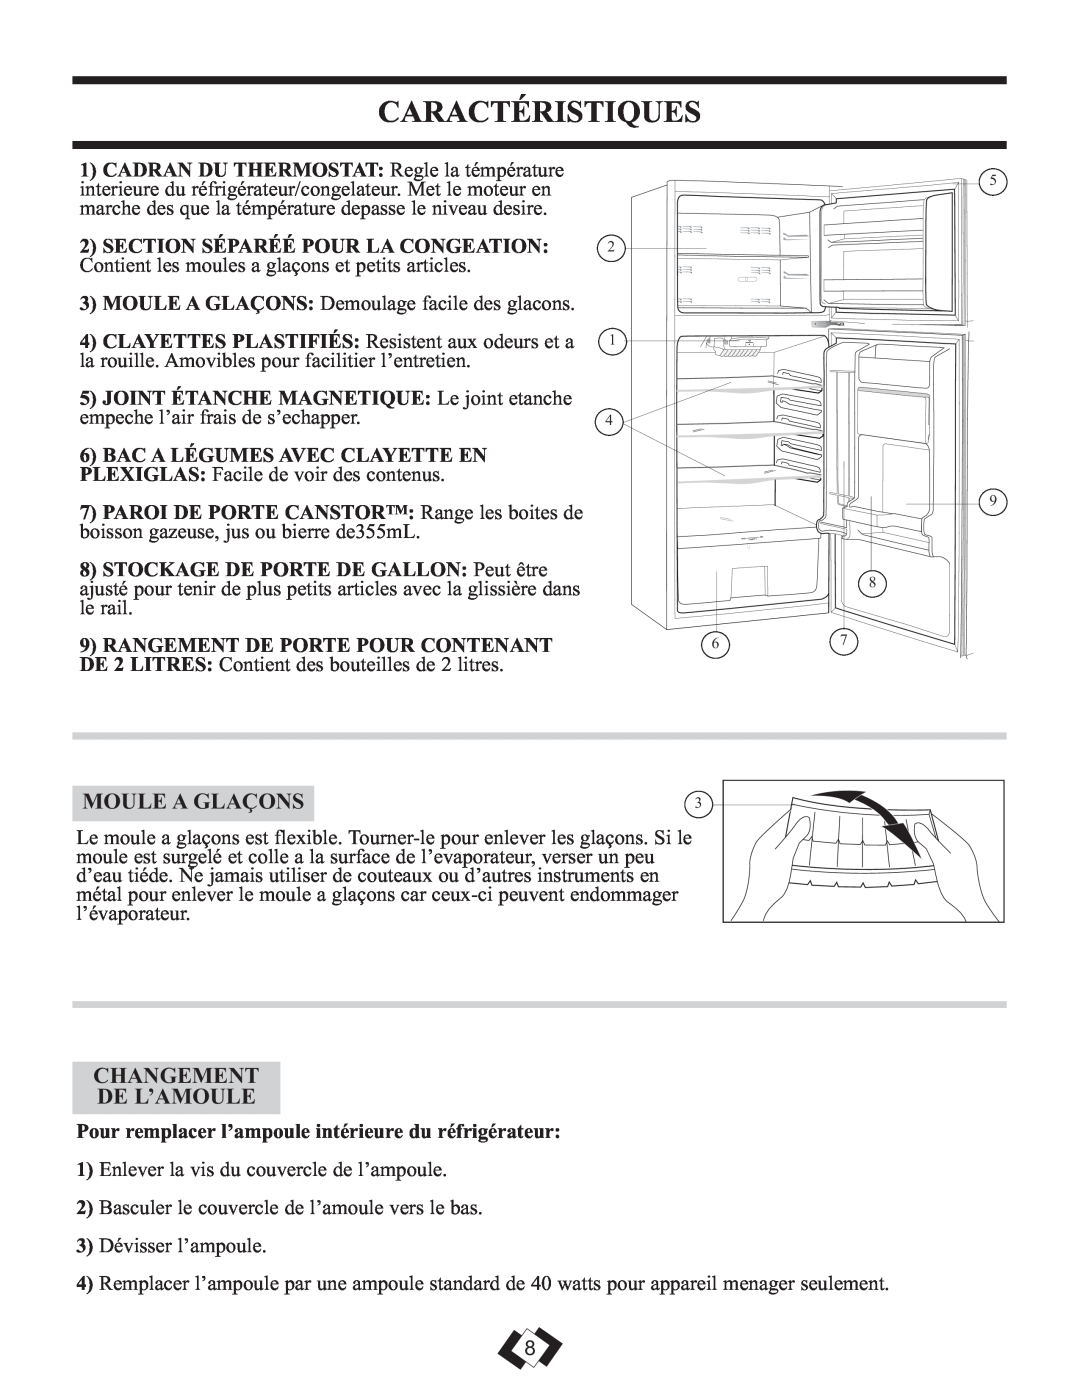 Sunbeam DFF258WSB installation instructions Caractéristiques, Moule A Glaçons, Changement De L’Amoule 